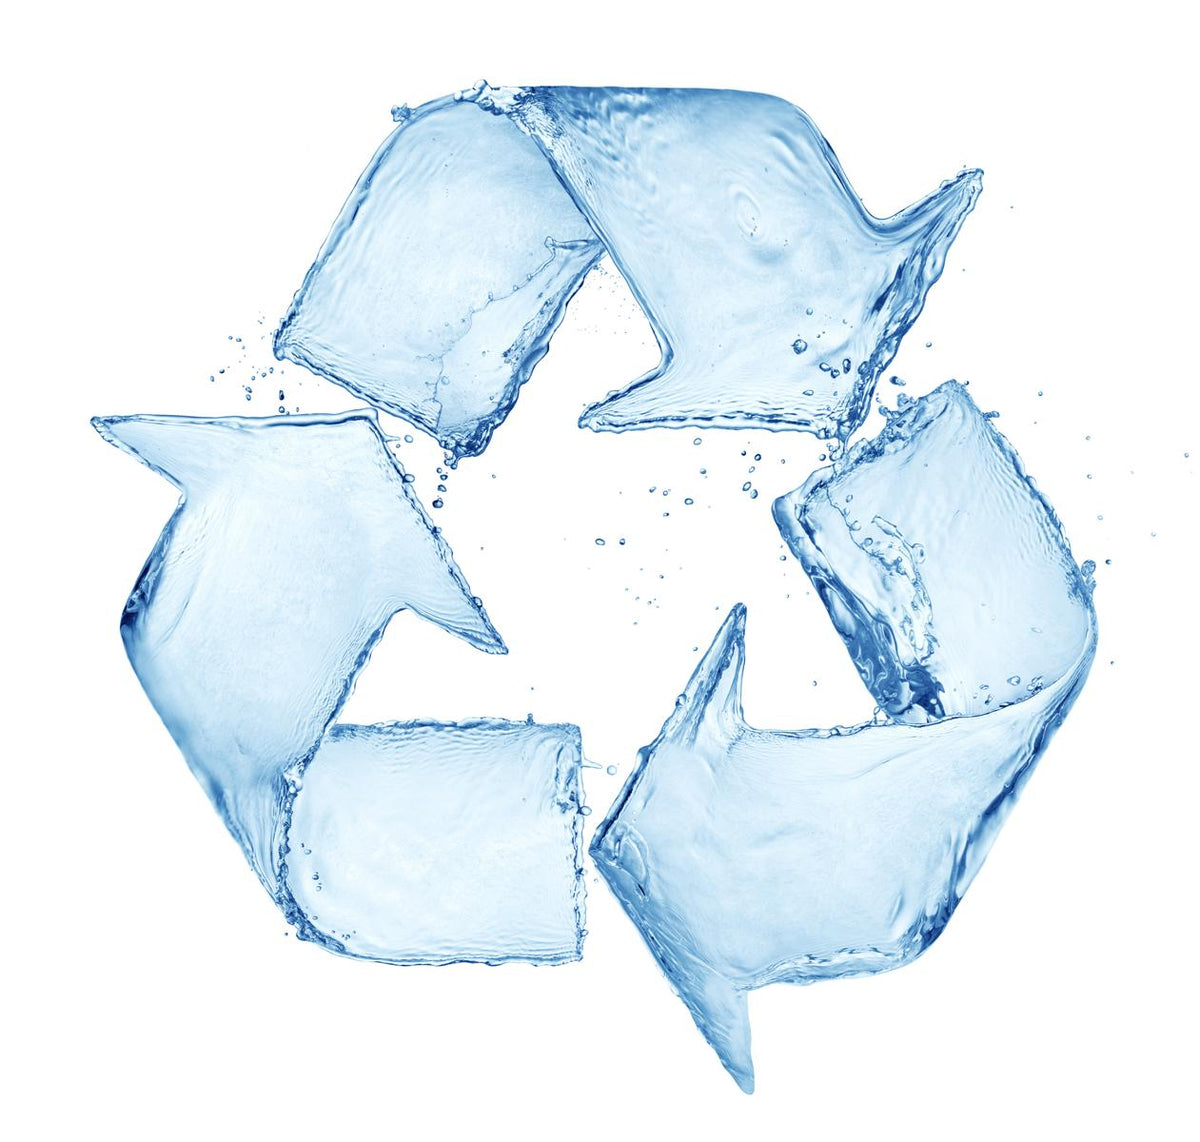 Recycling mit Verantwortung. blooprint.de bietet ausschließlich in Deutschland recycelte / Wiederaufbearbeitete Toner an.